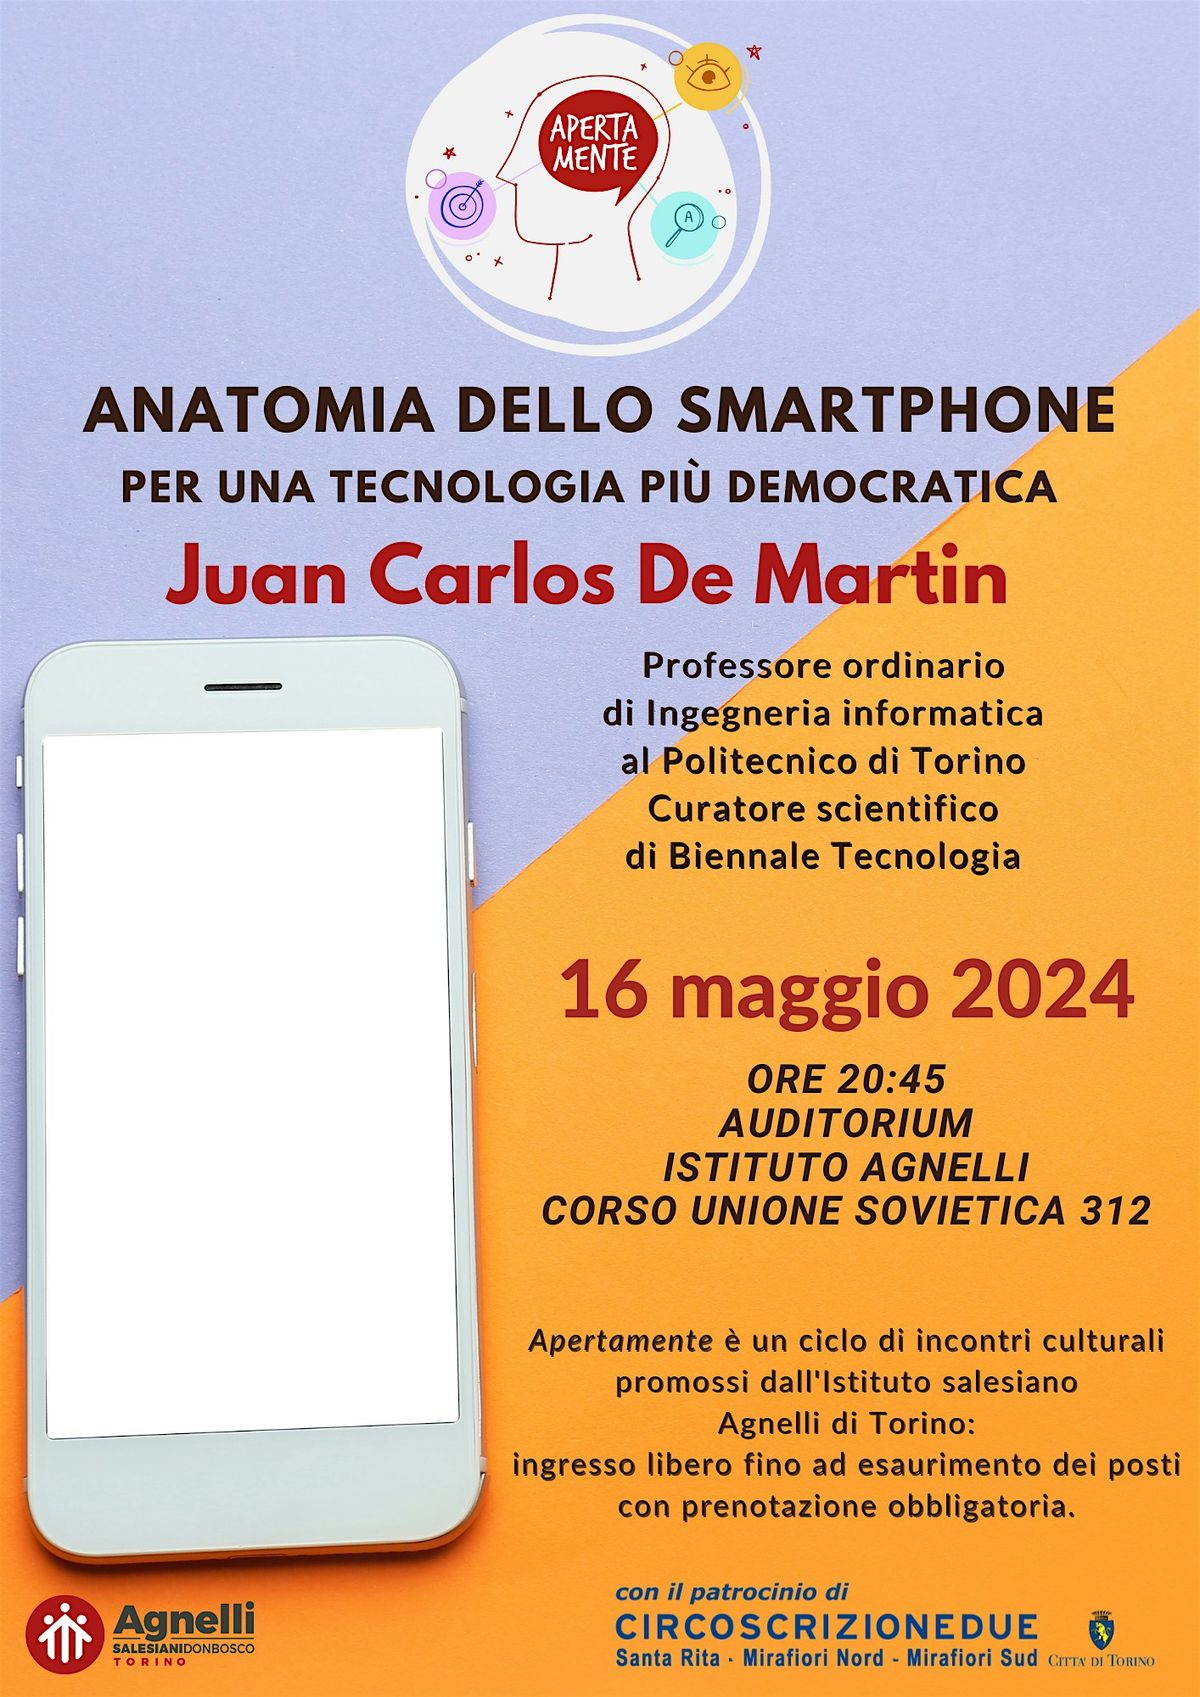 Anatomia dello smartphone: per una tecnologia pi\u00f9 democratica